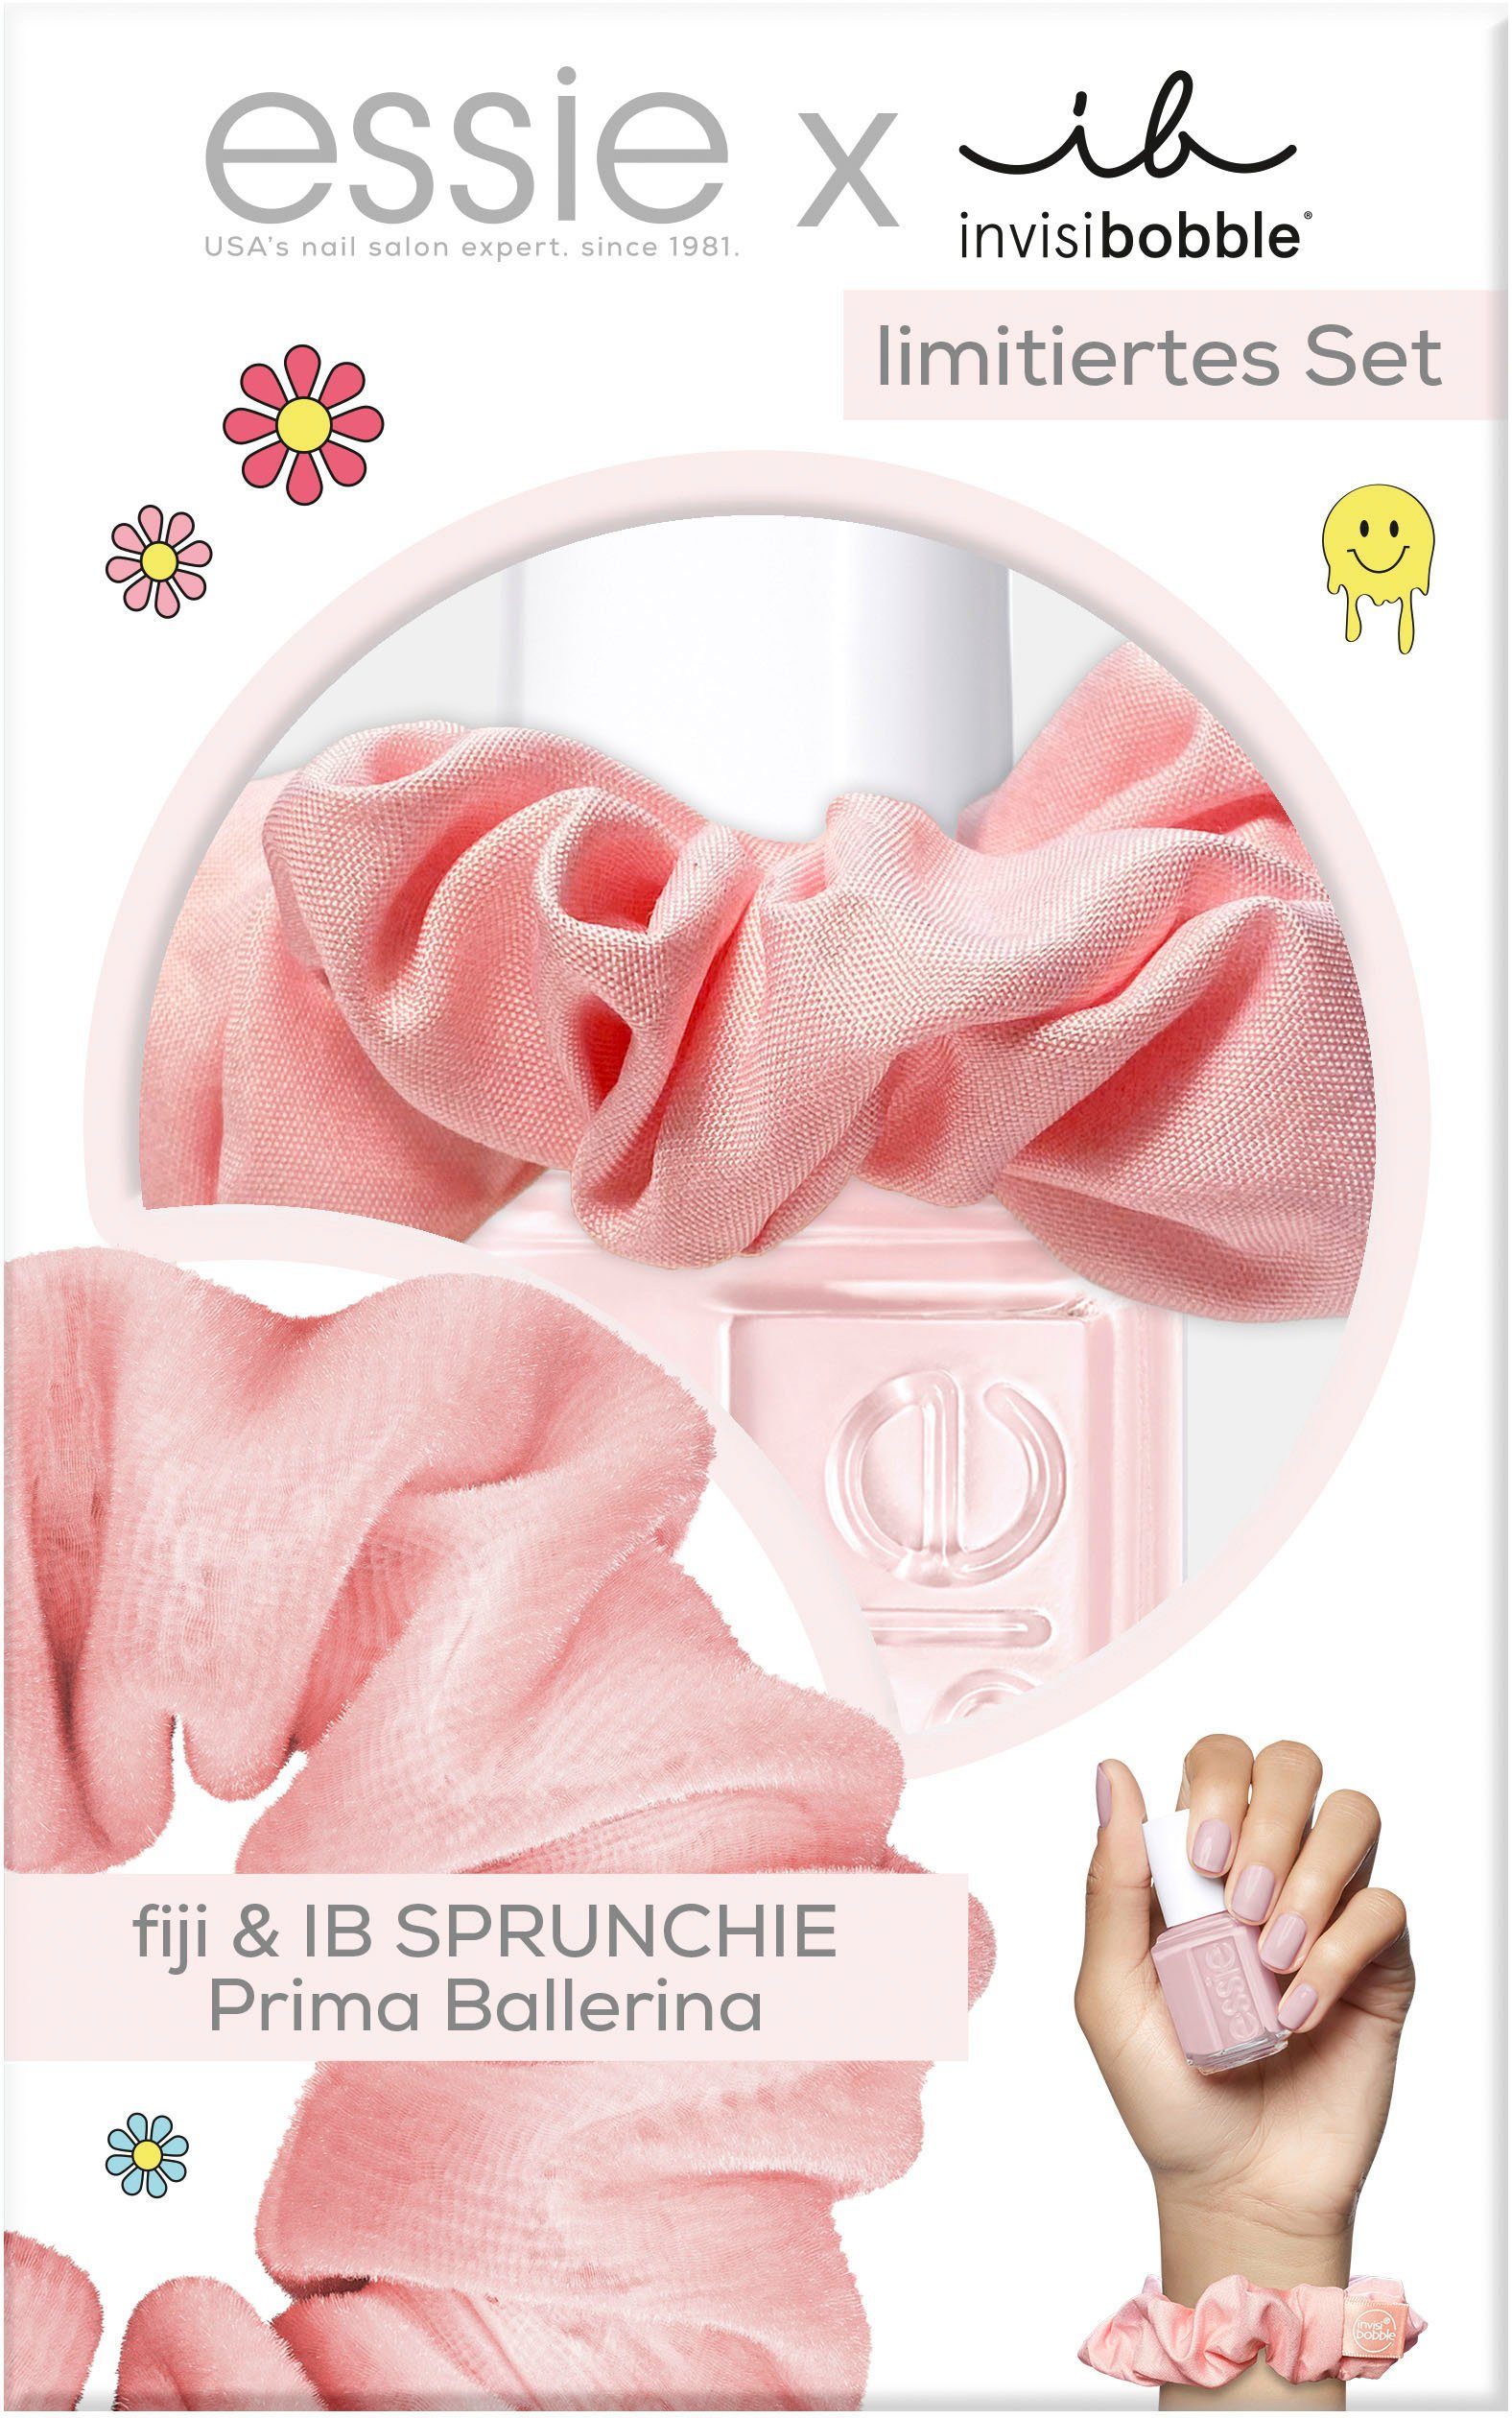 essie Nagellack-Set Essie Nagellack, Mit farblich passendem invisibobble  Sprunchie in Rosa